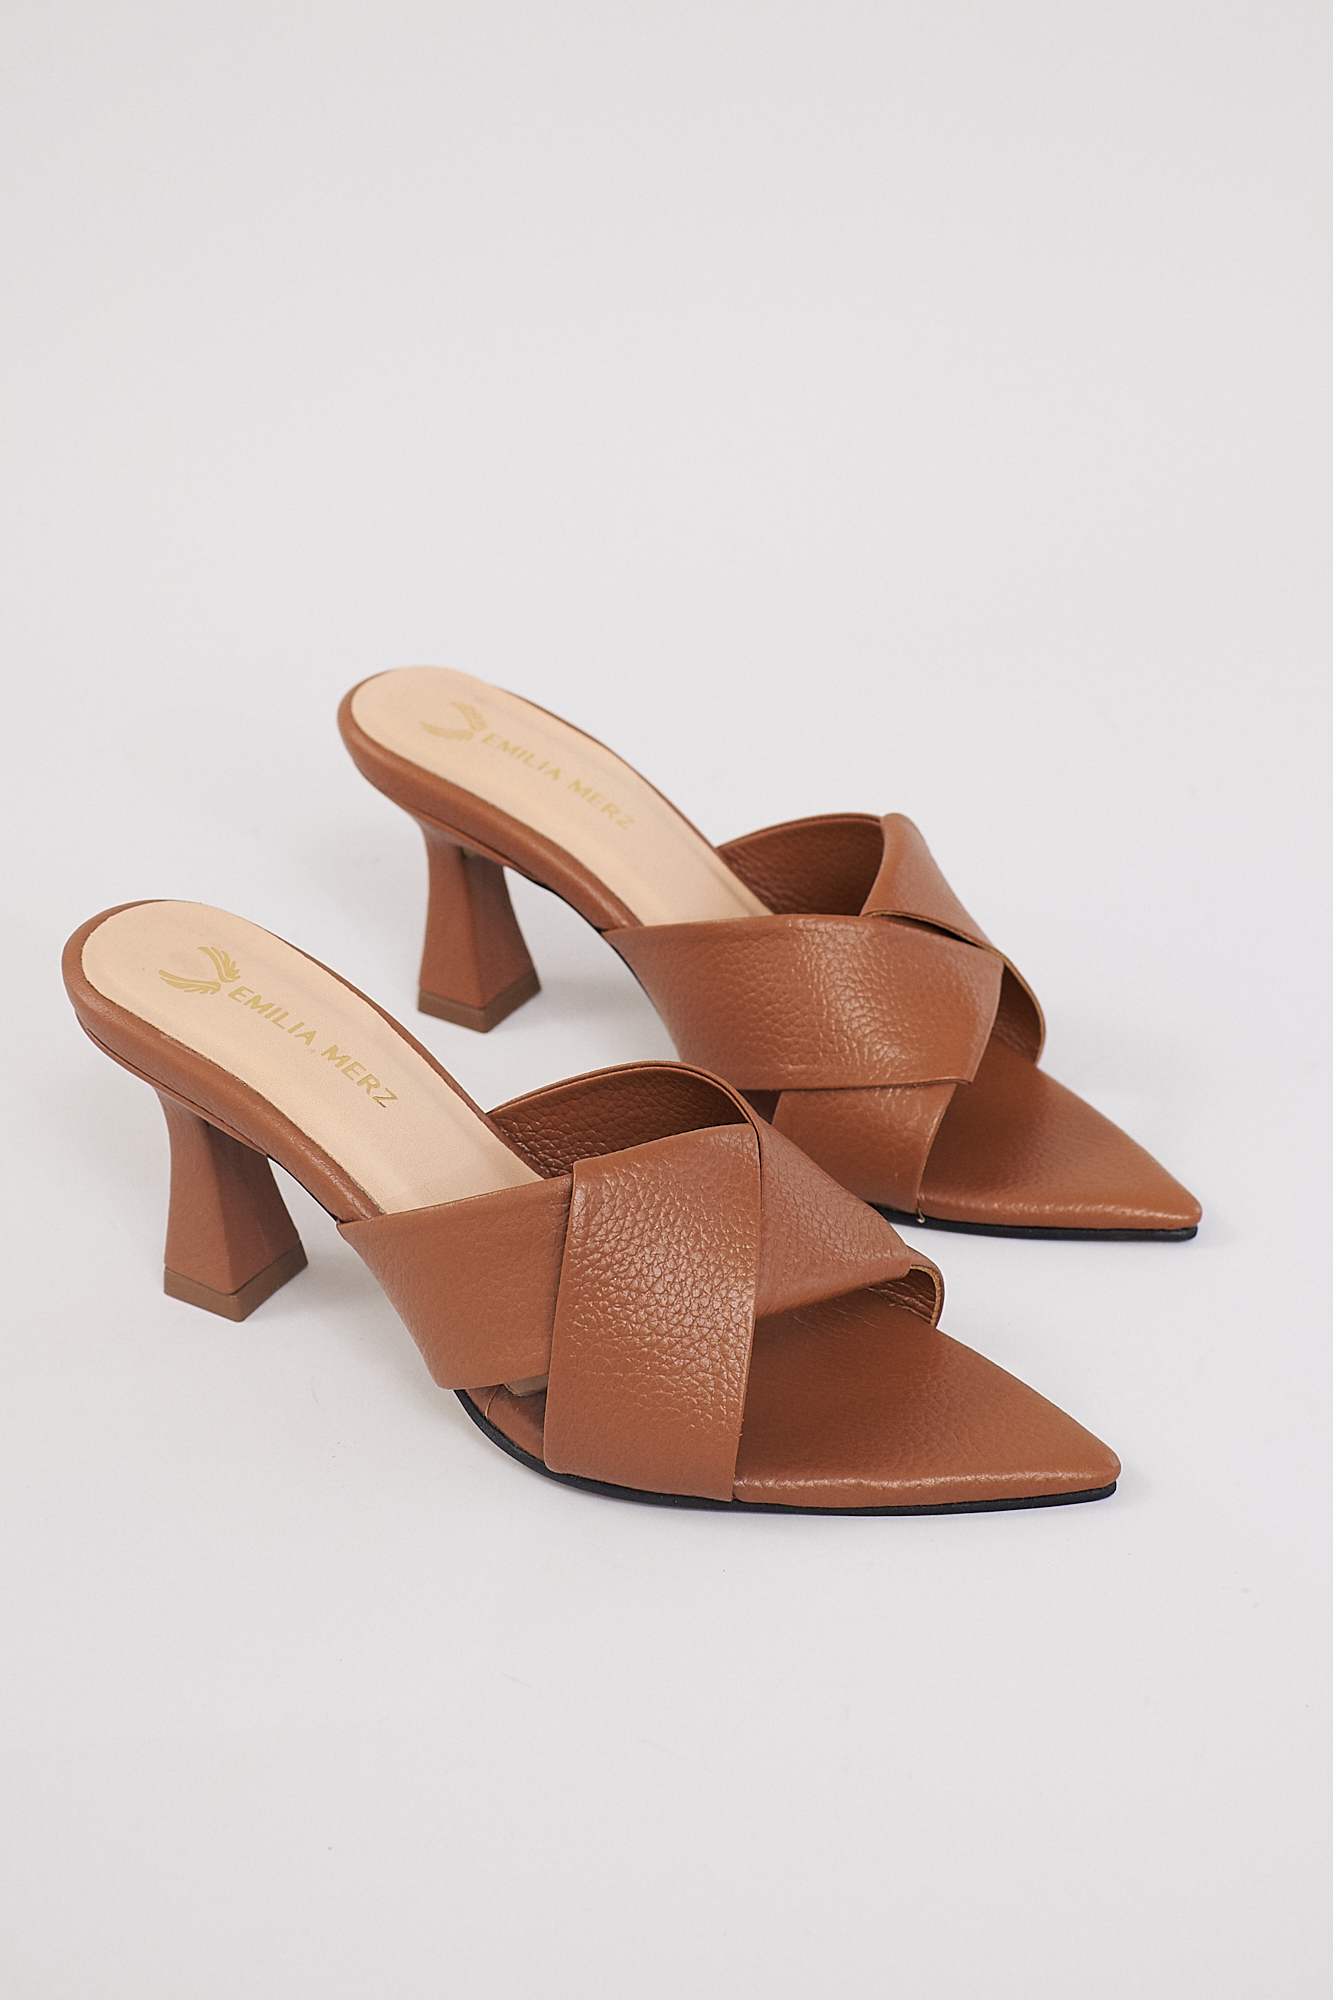 brown peep toe heels from emilia merz